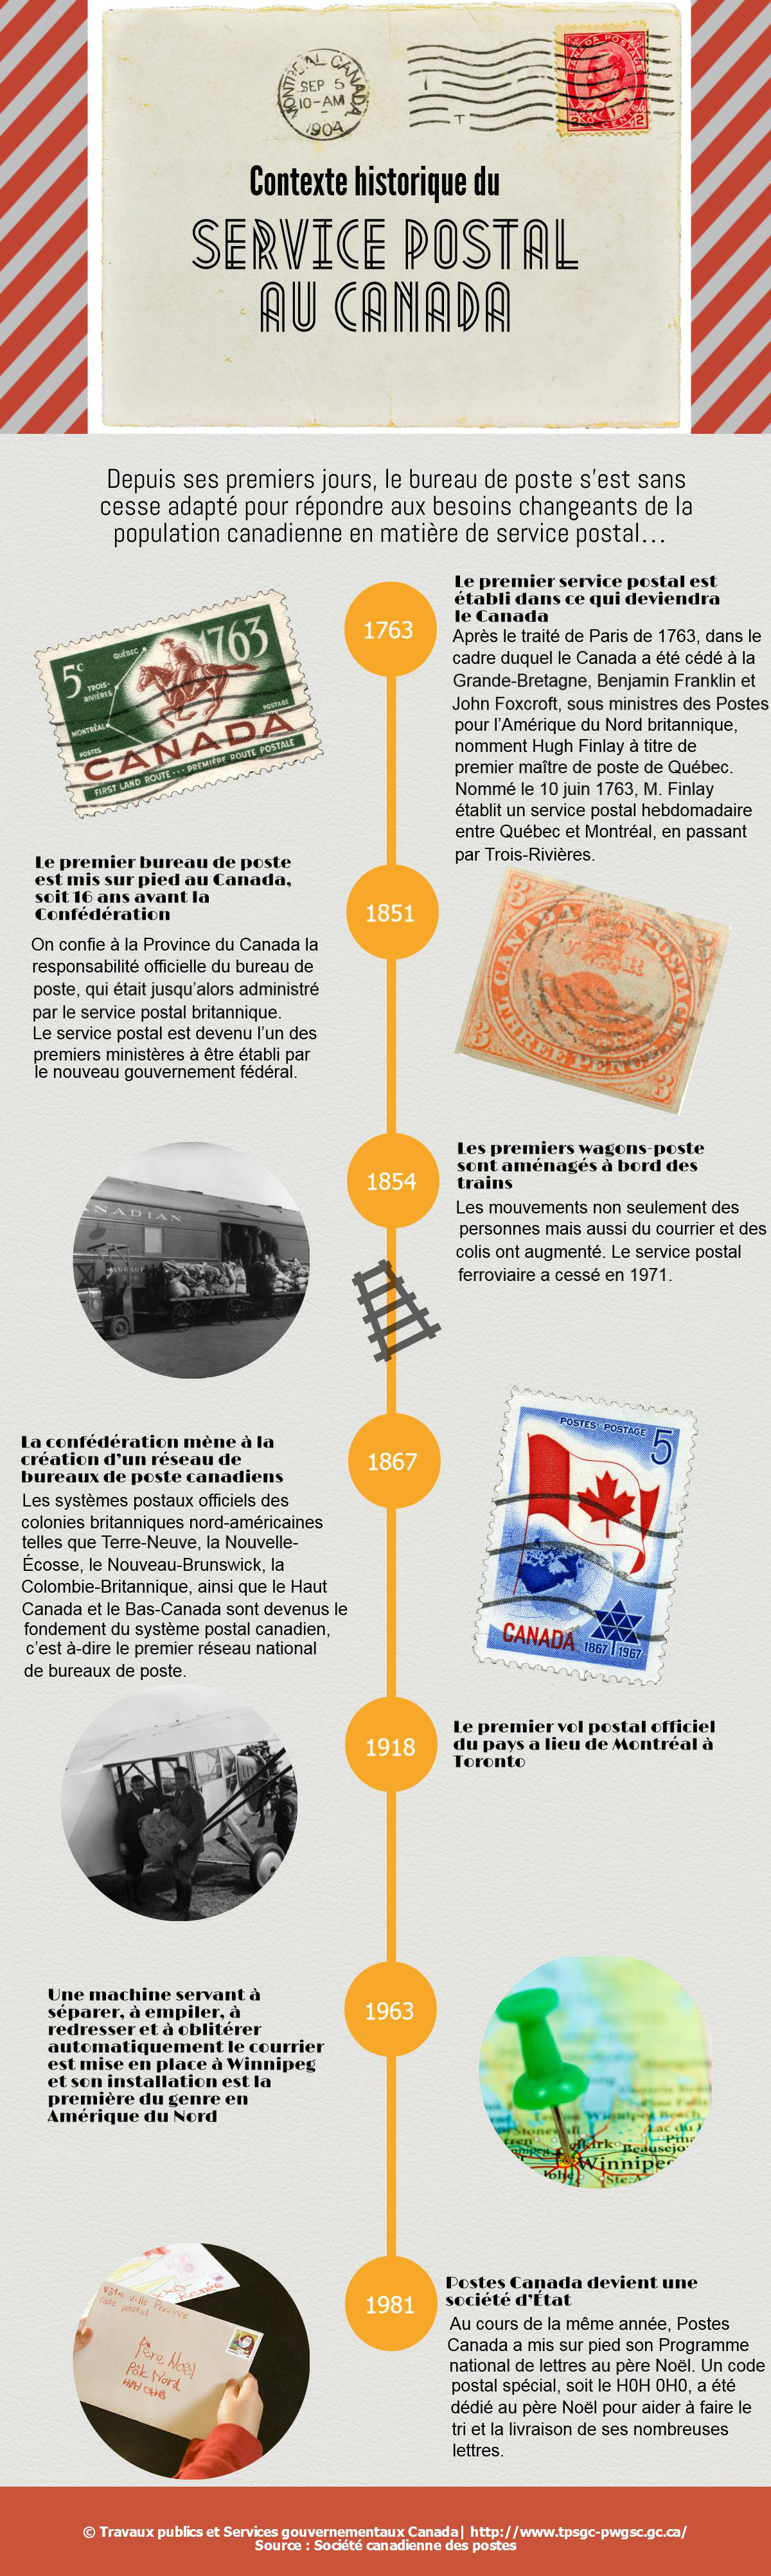 Infographie sur les services postaux au Canada : contexte historique